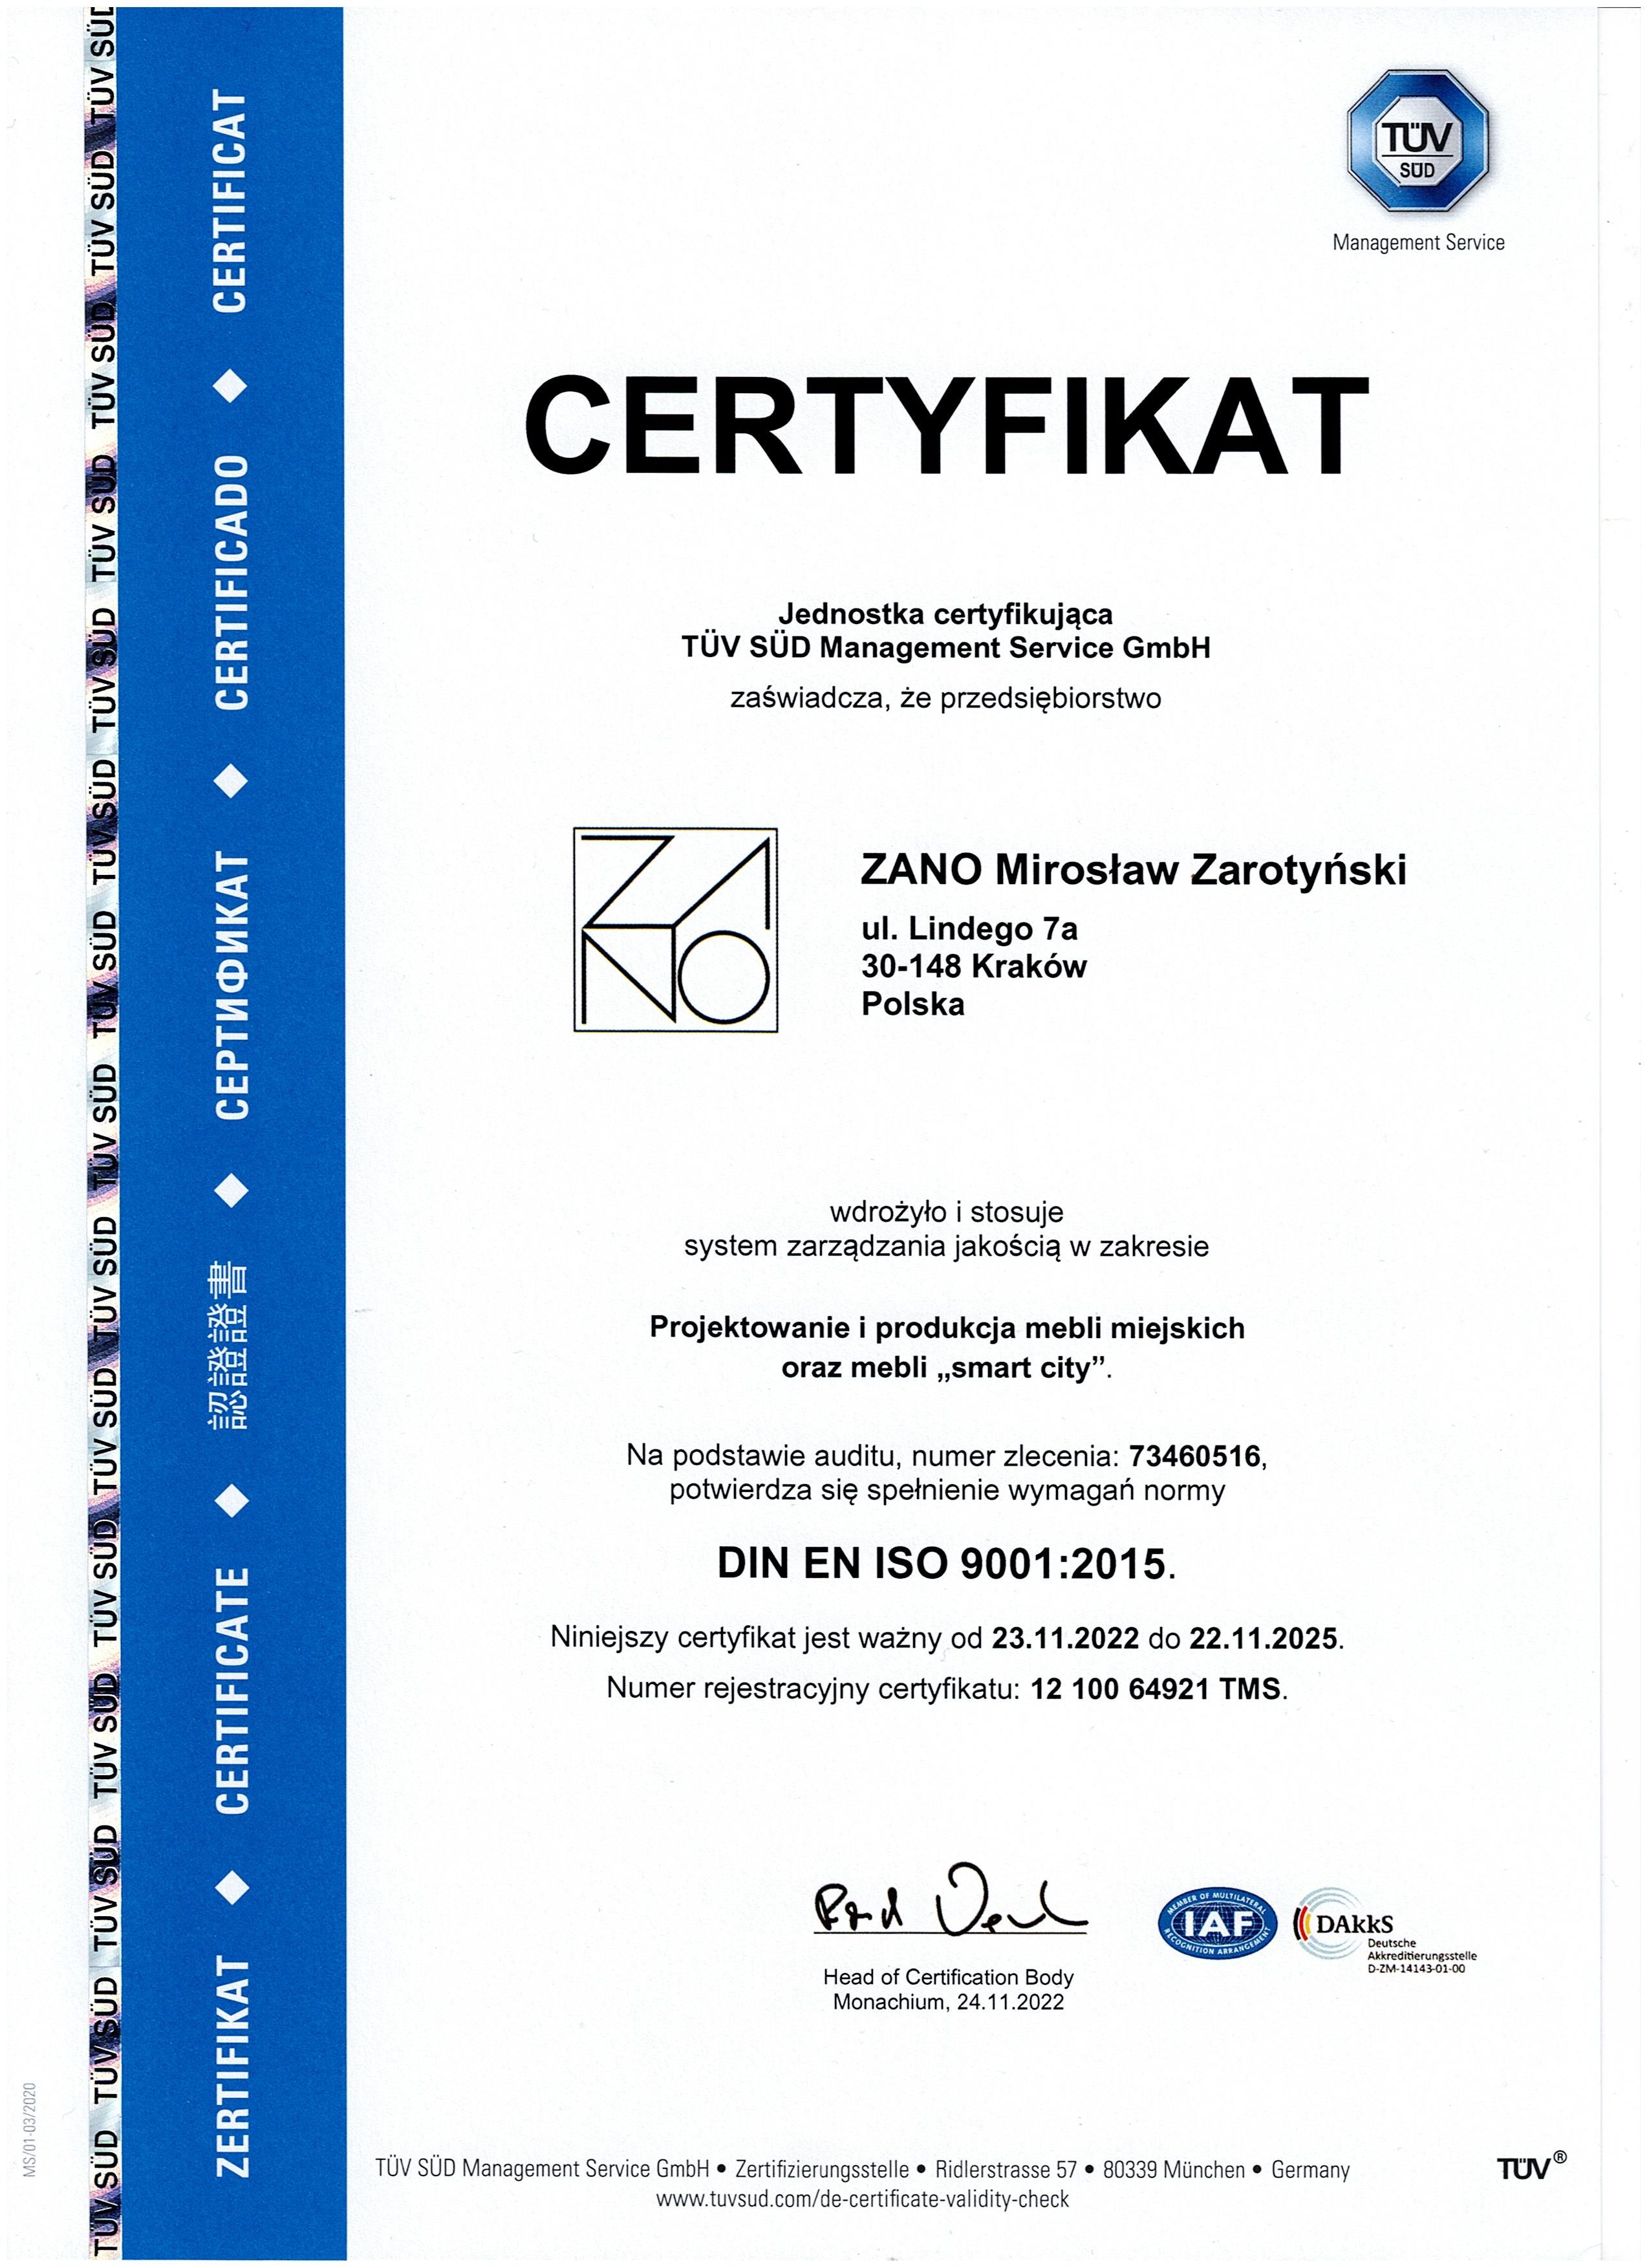 Certyfikat projektowanie i produkcja